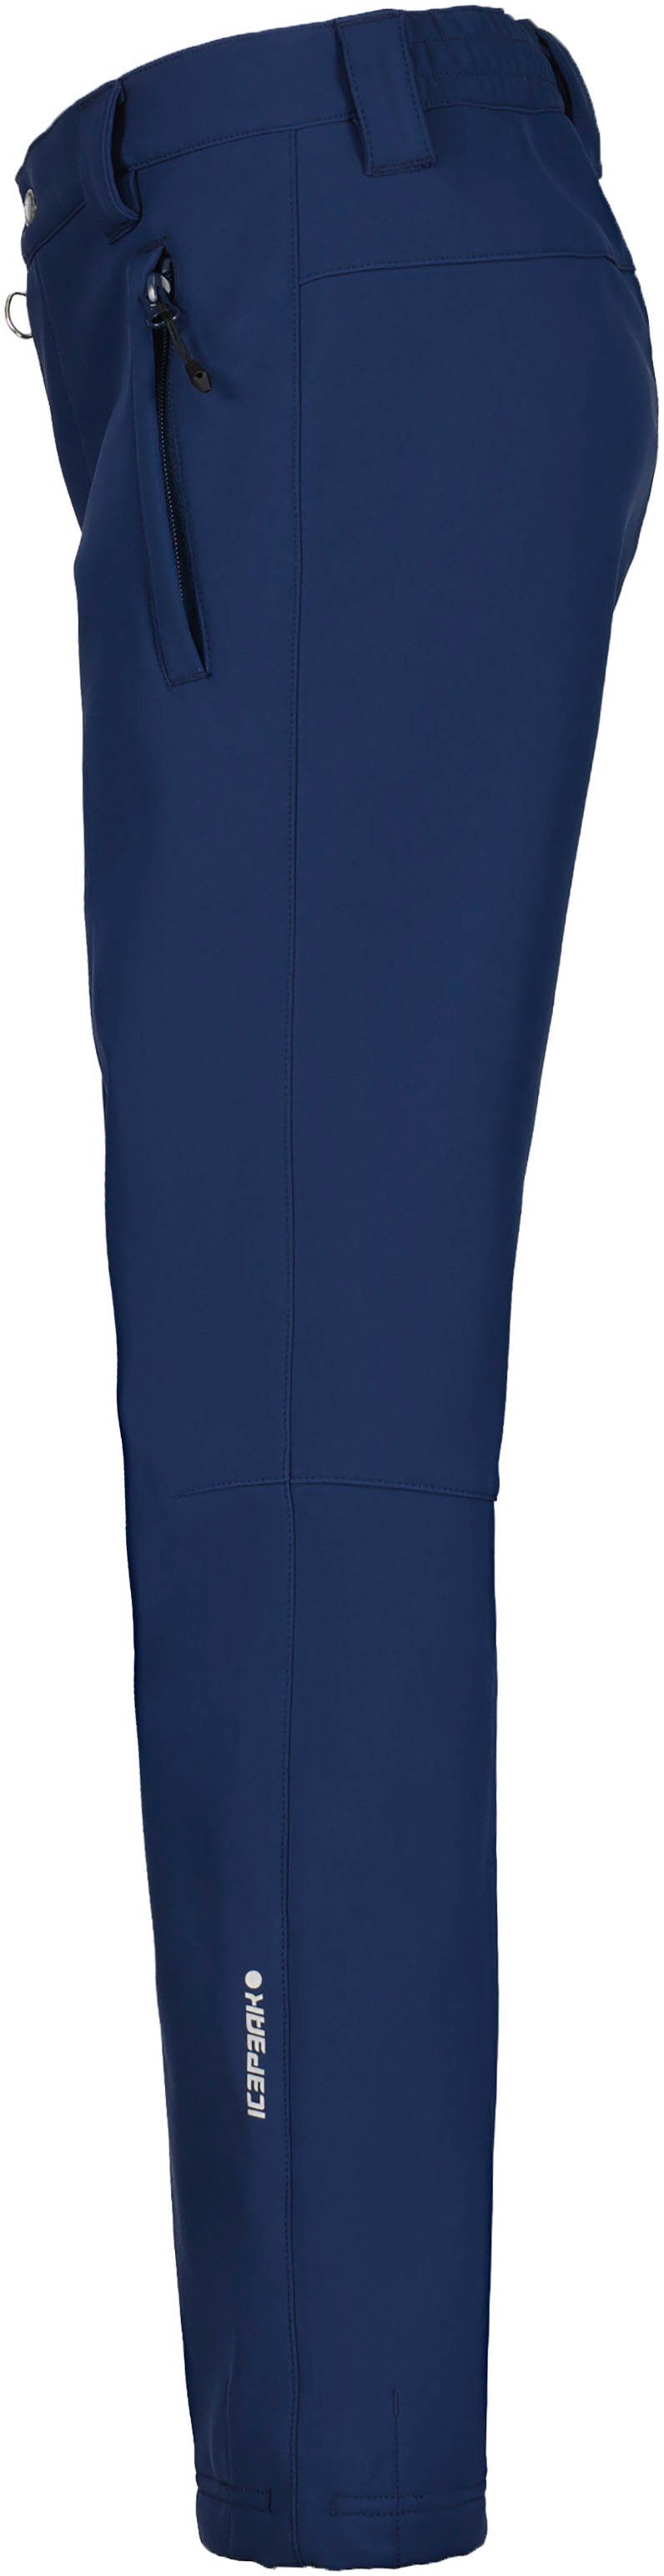 KABWE Softshellhose mit Reißverschlusstaschen für Kinder Icepeak - BLUE JR DARK